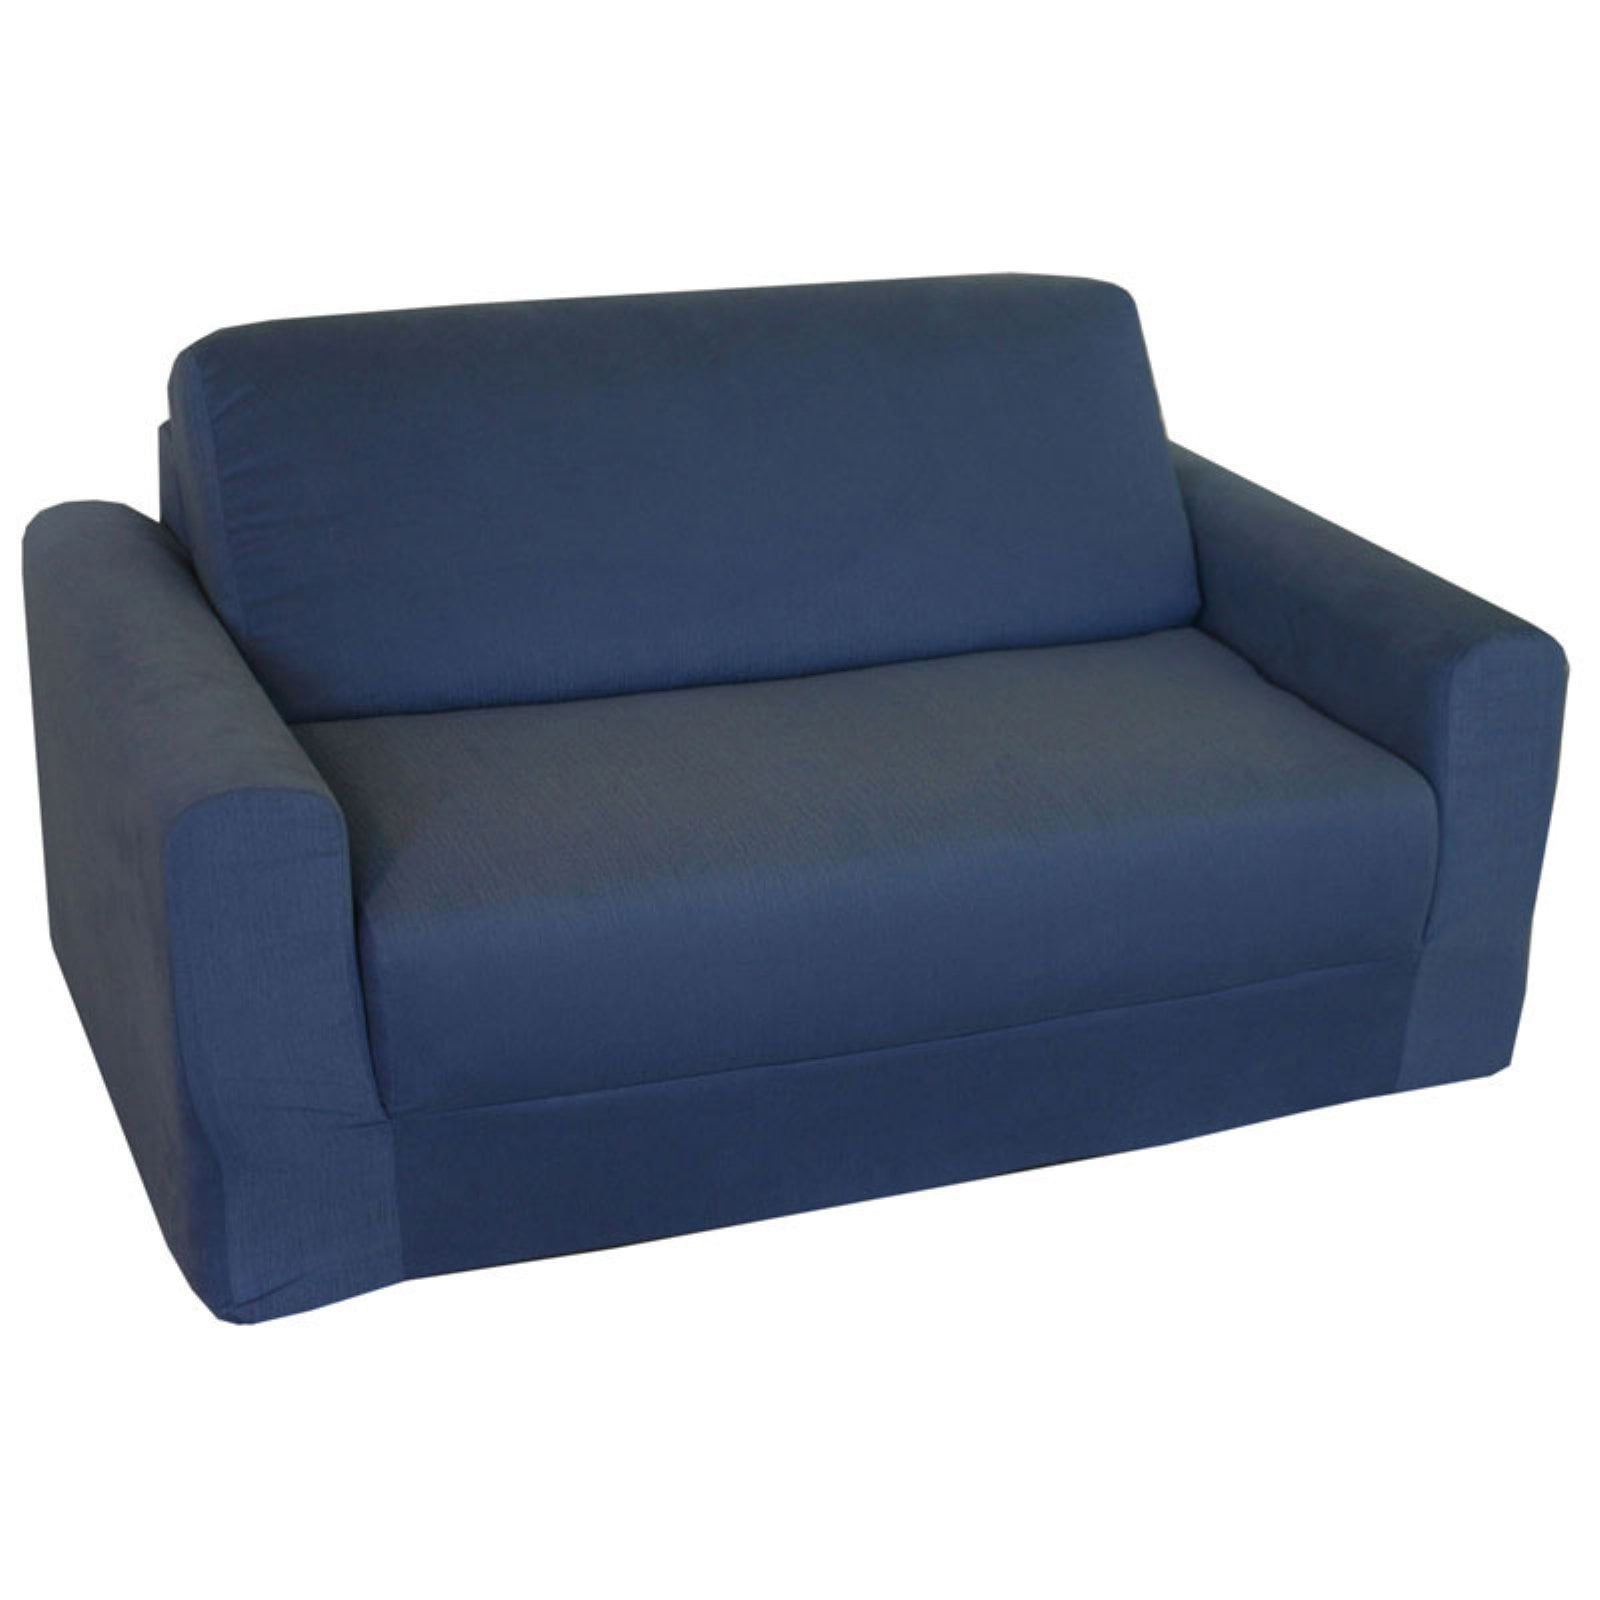 Fun Furnishings Chair Sleeper Blue